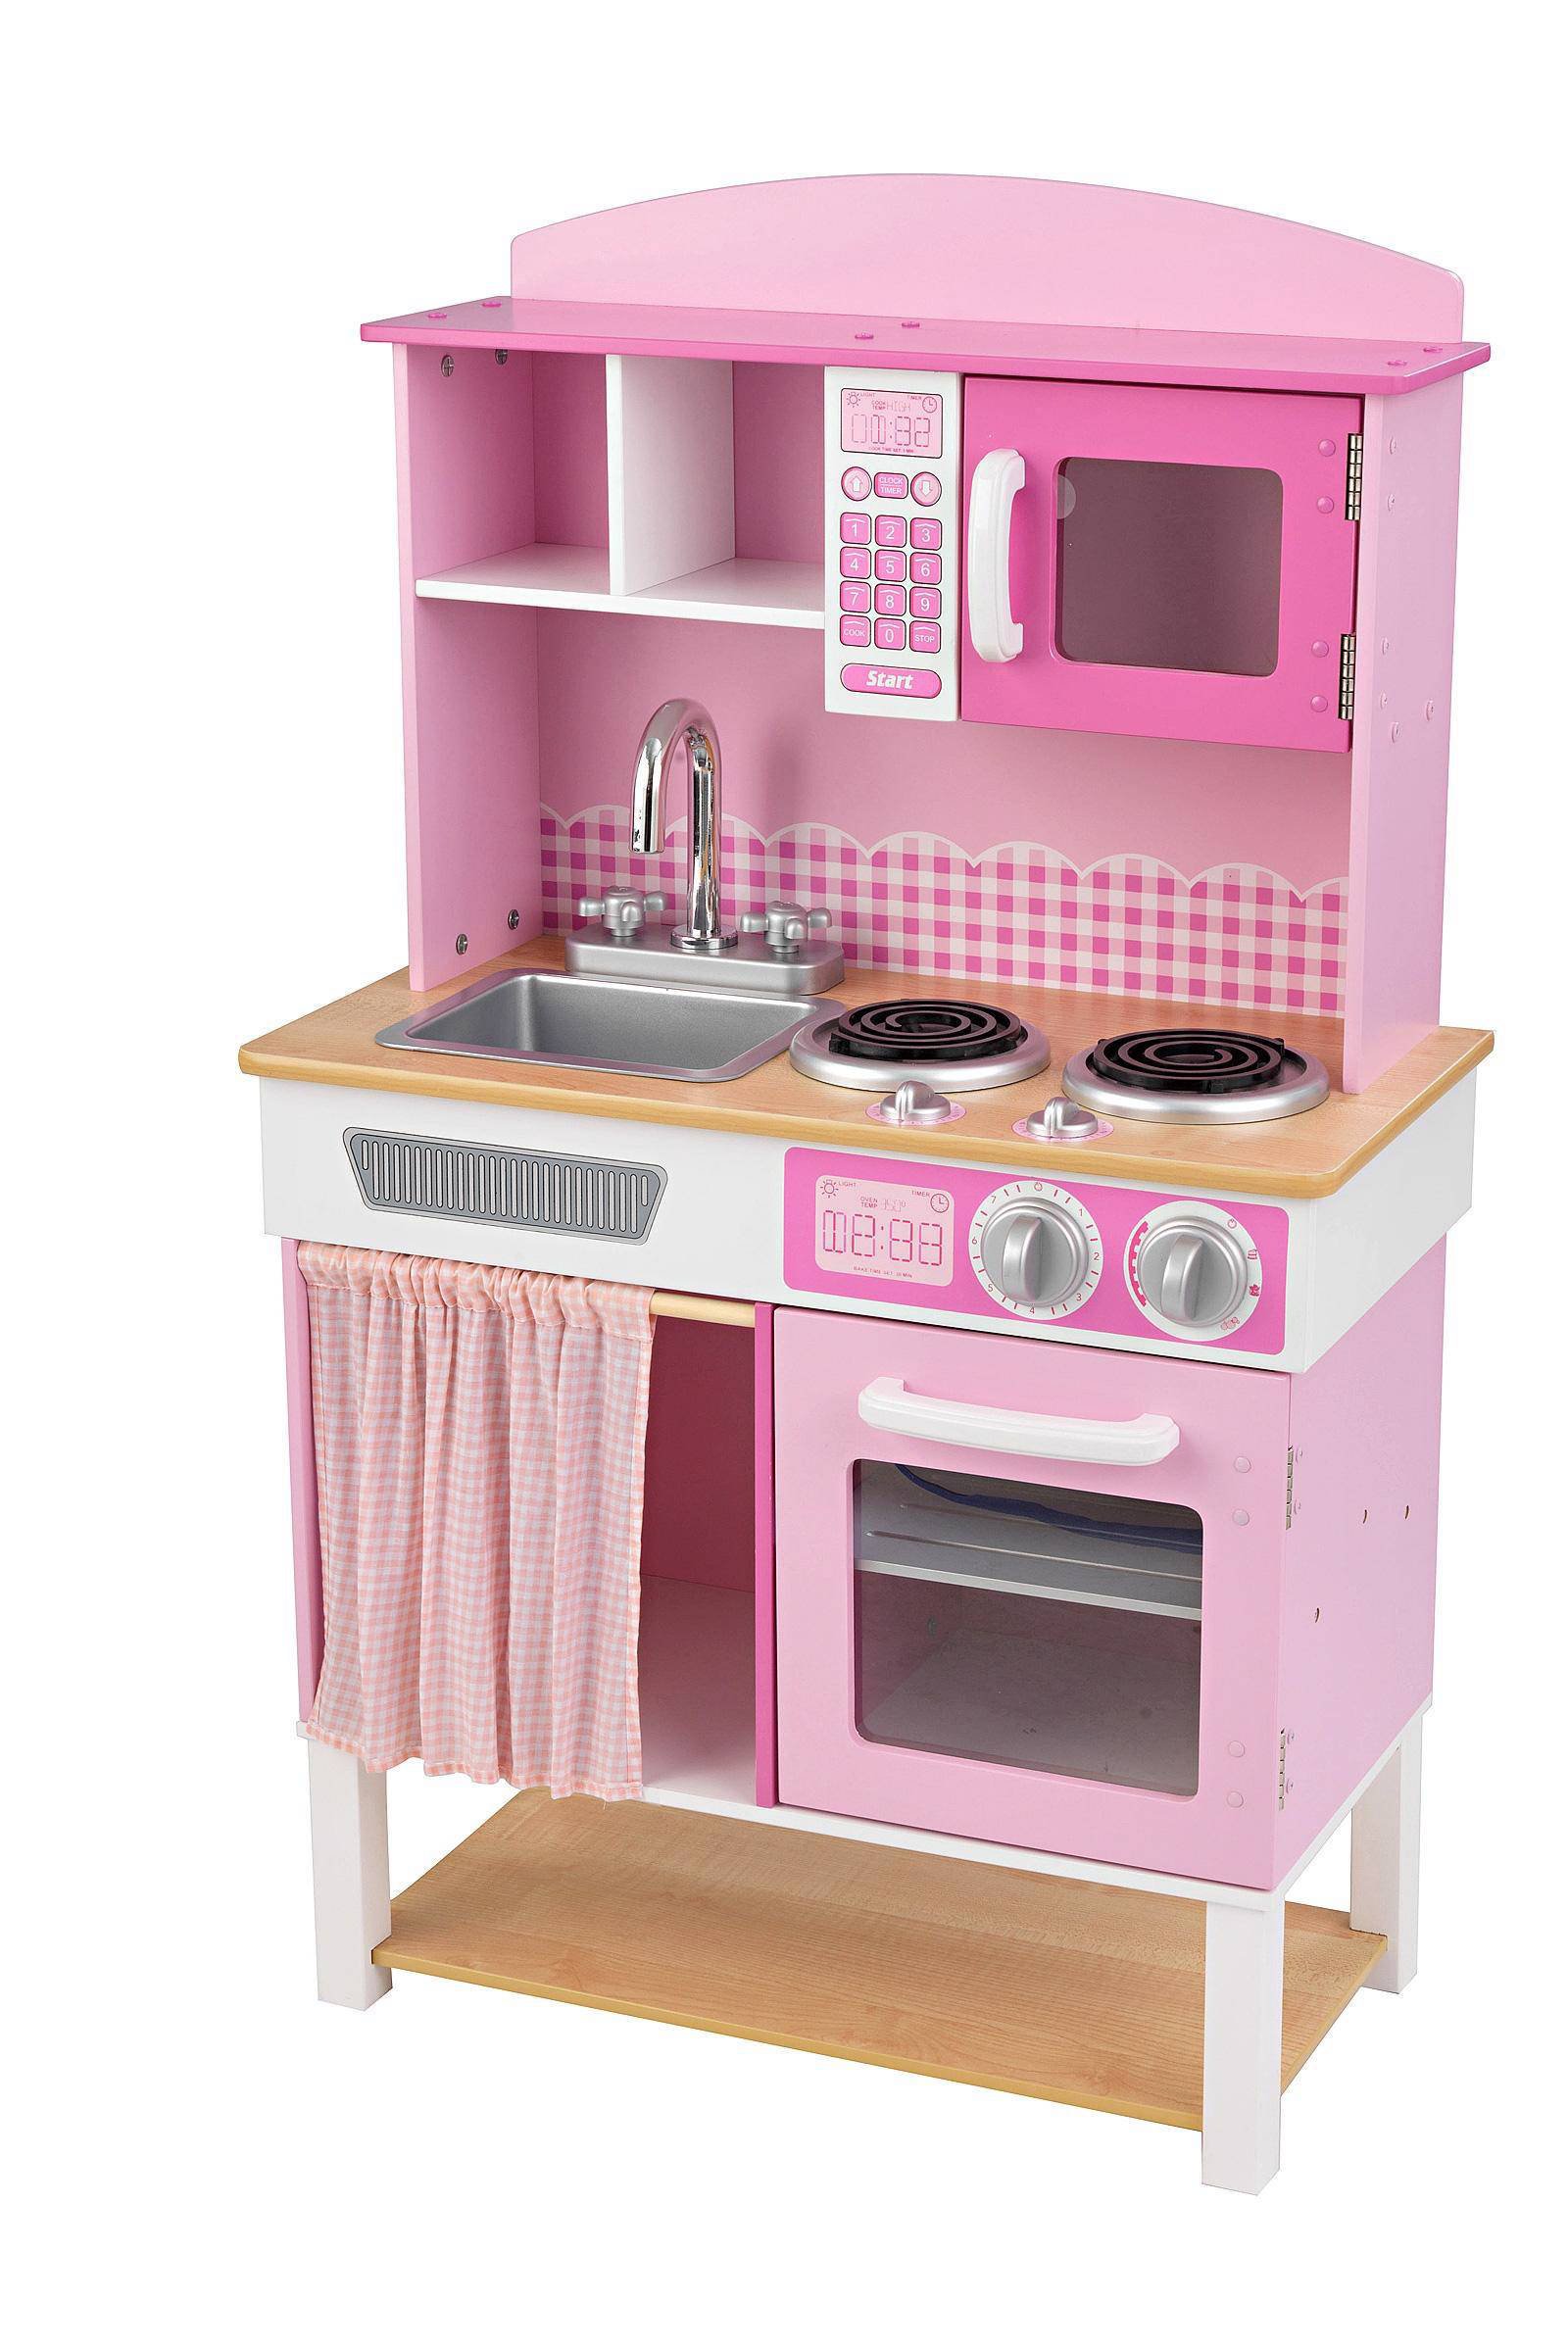 Speelgoed keuken home Cookin' 61x34x101 cm roze 53198 -